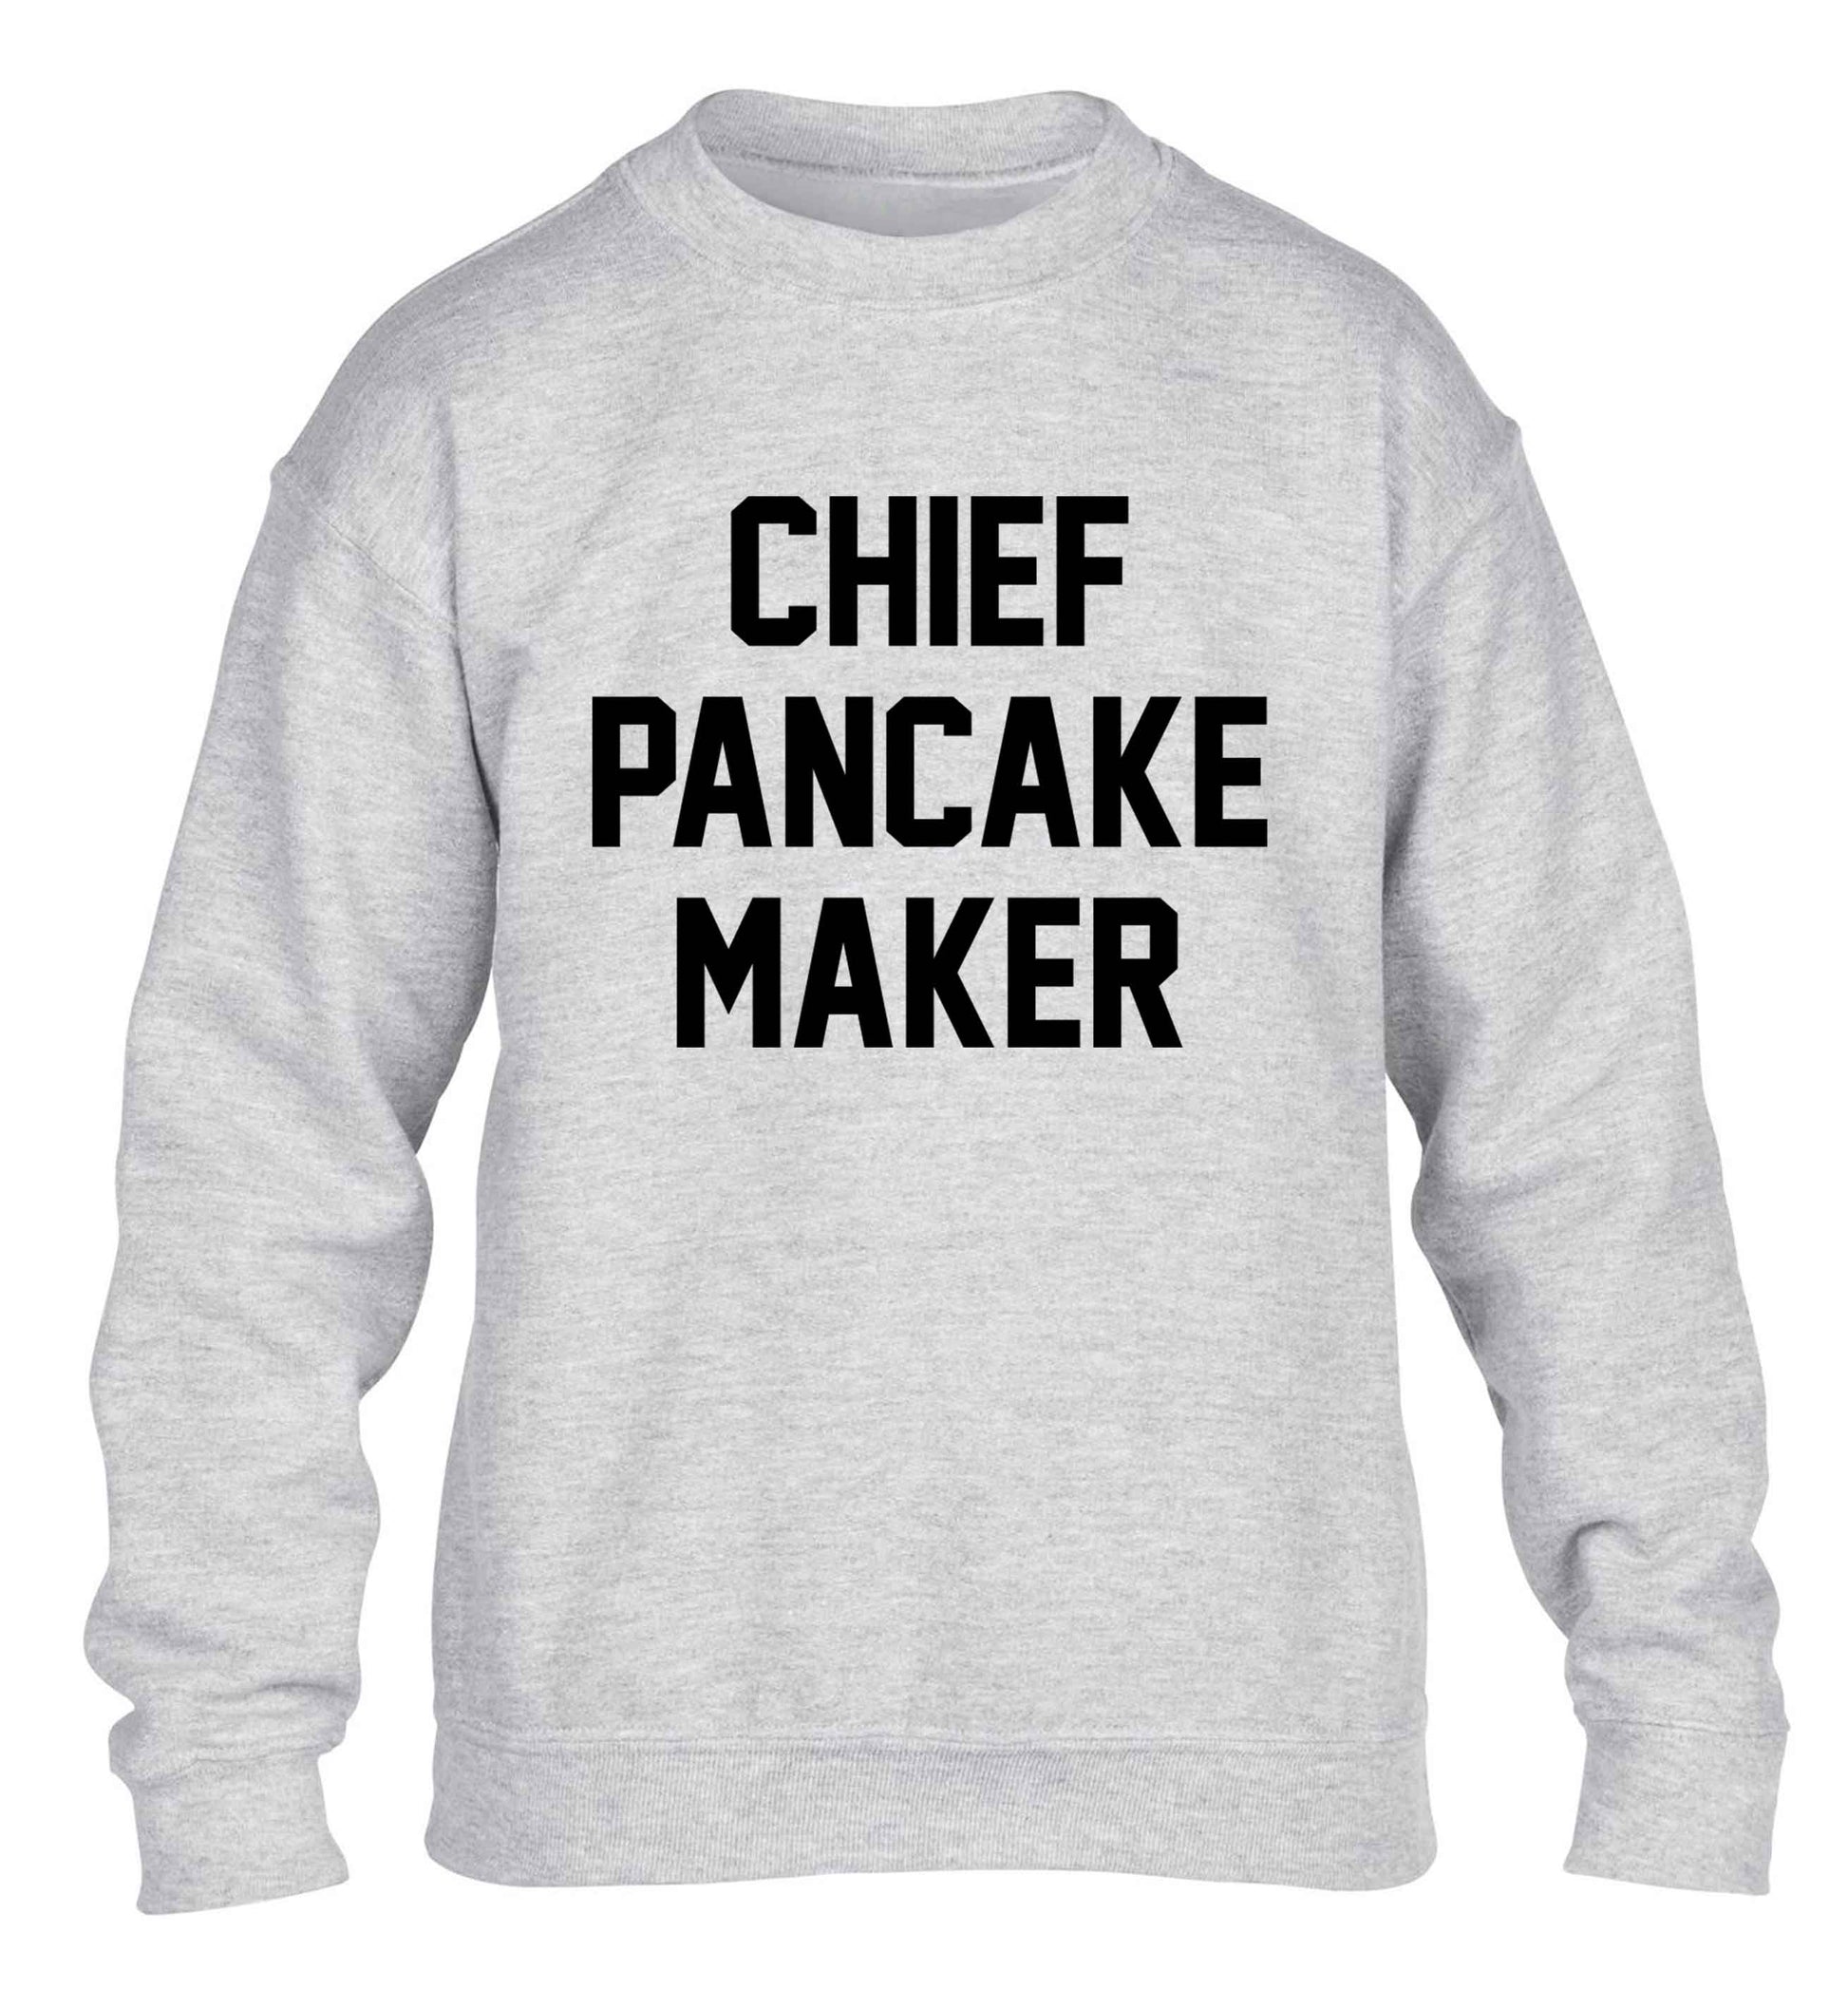 Chief pancake maker children's grey sweater 12-13 Years